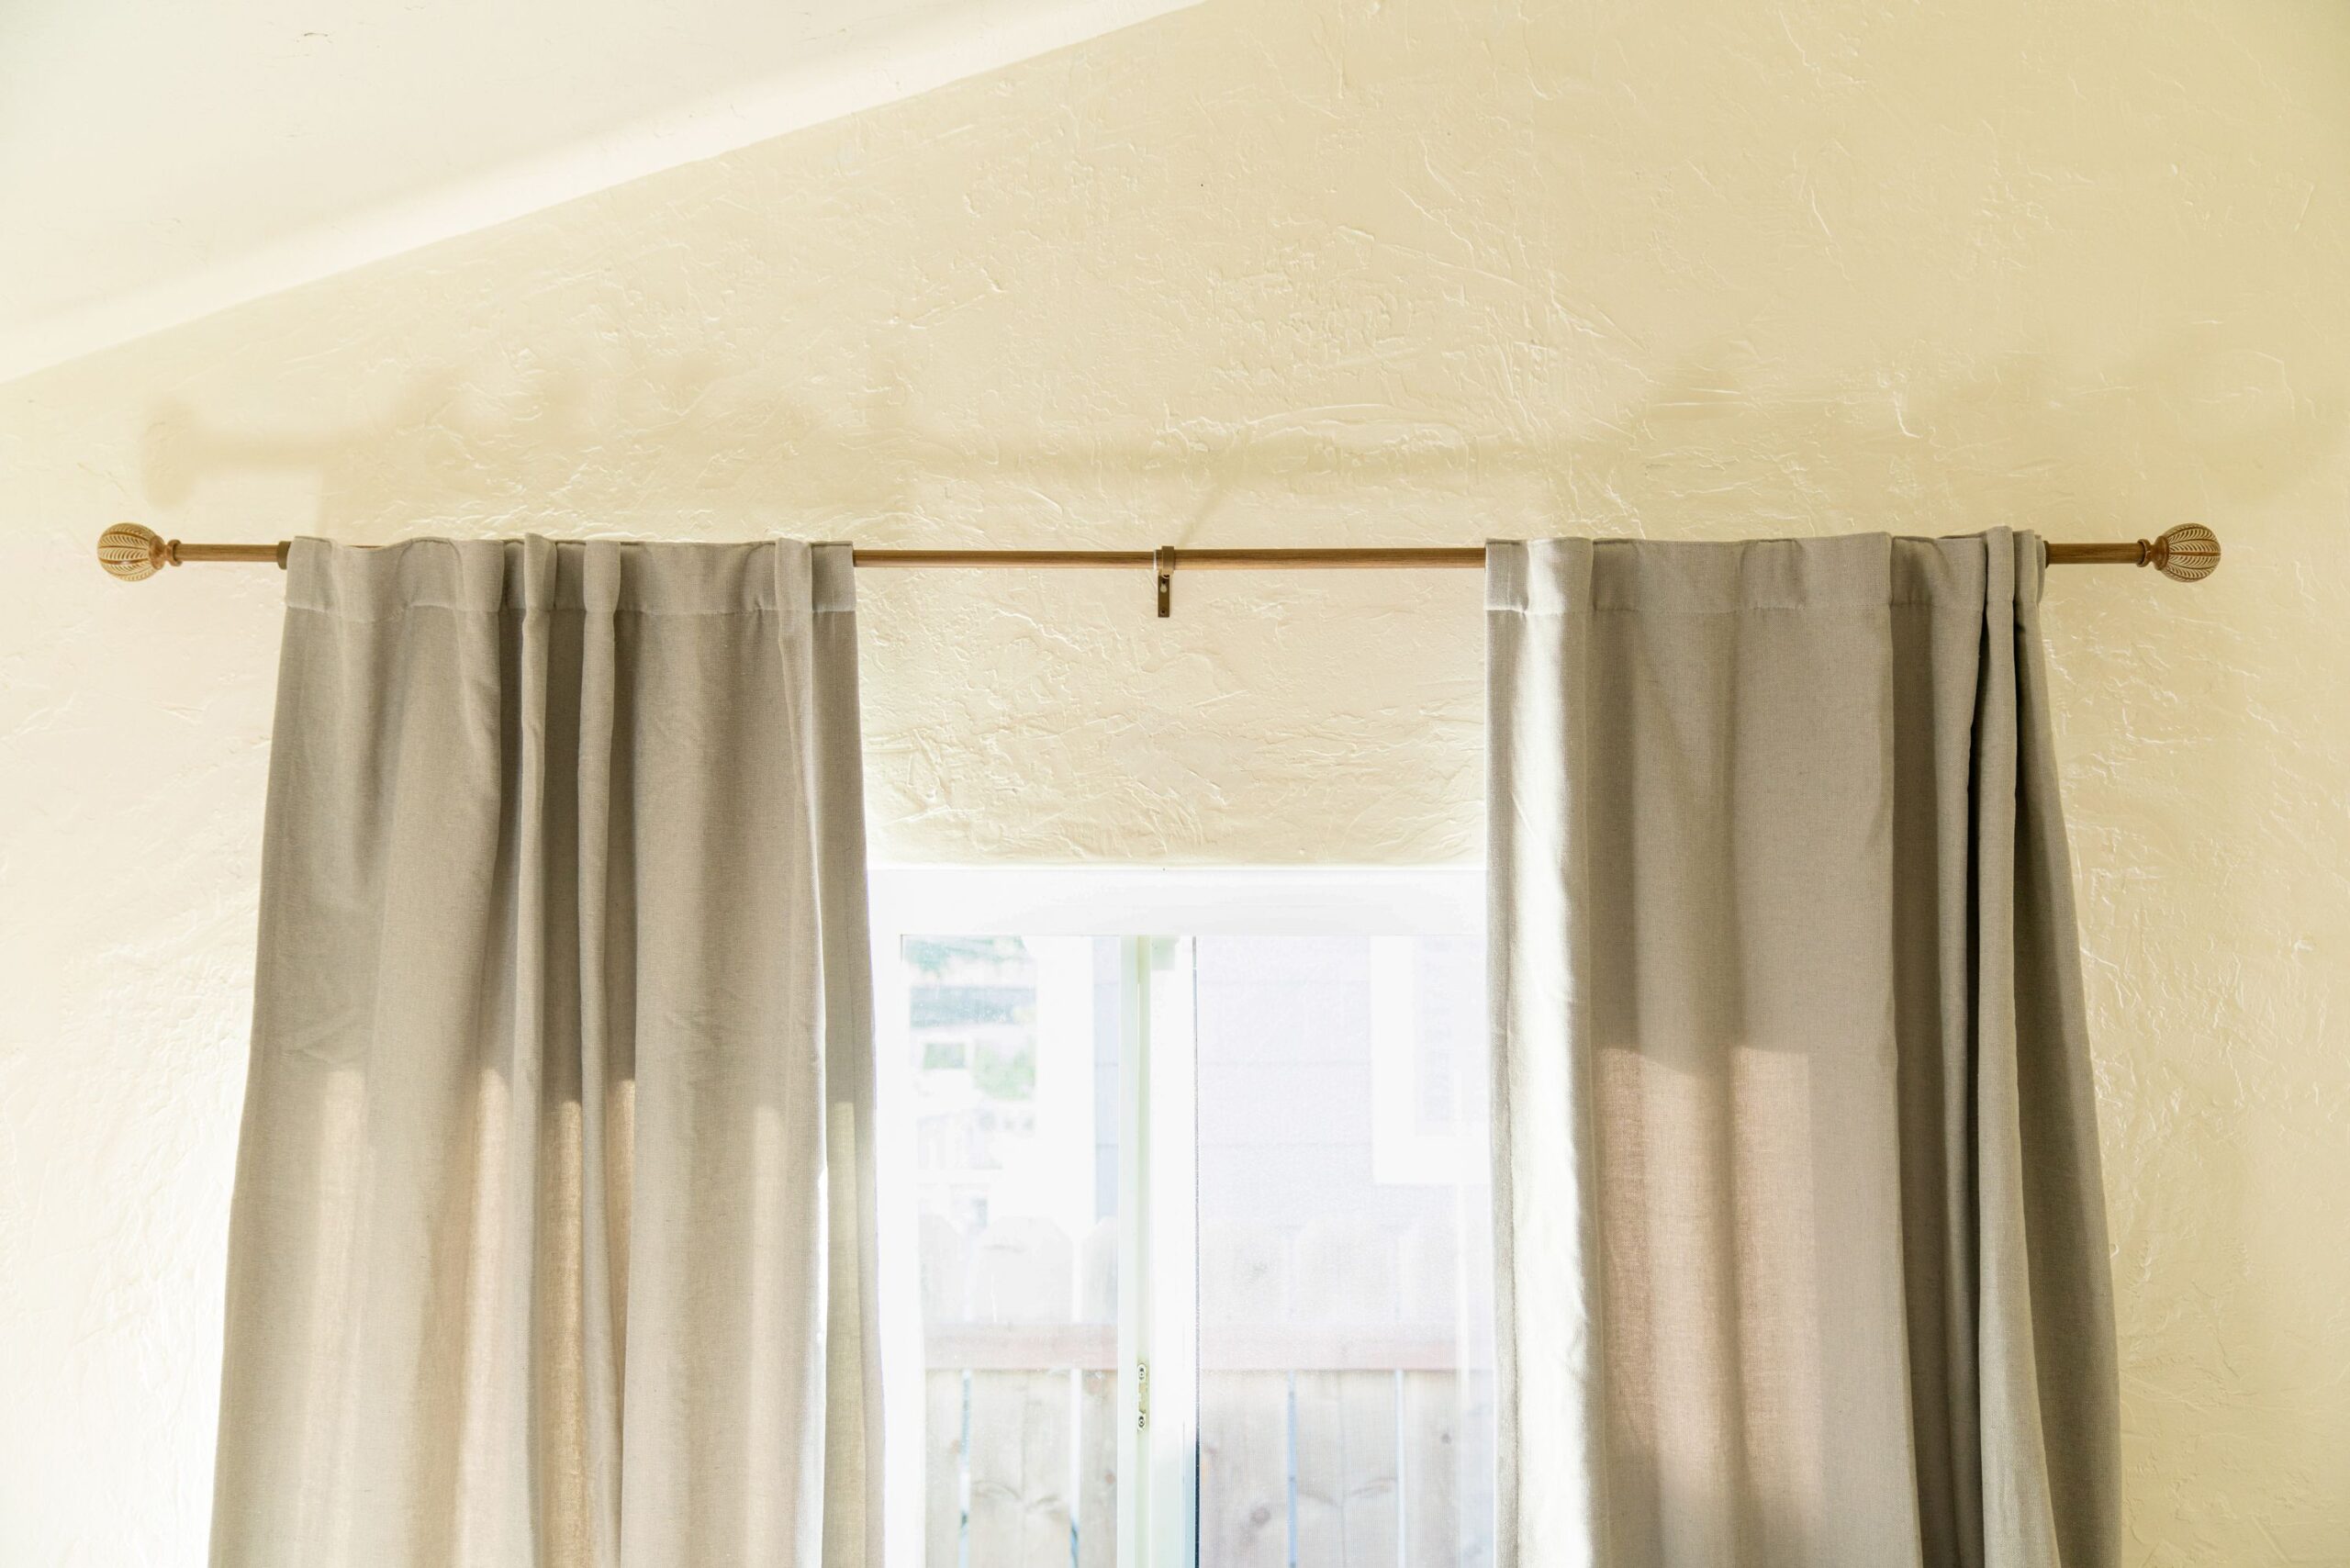 How Many Curtain Brackets Do You Need?